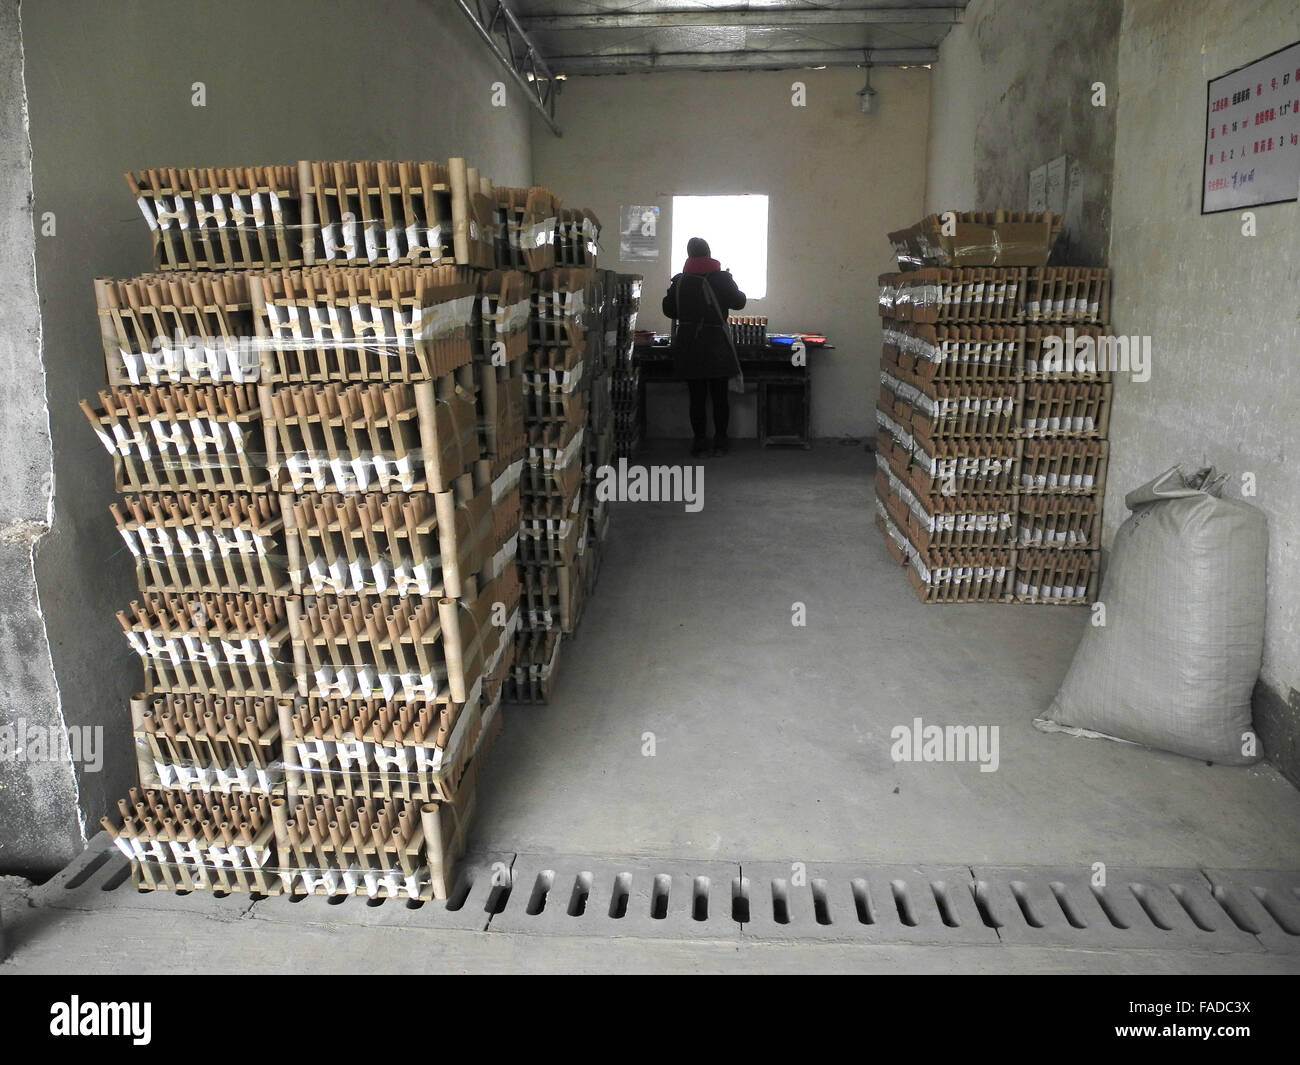 Liuyang, Cina. 25 Nov, 2015. Un lavoratore assembla le batterie di razzi a una fabbrica di fuochi d'artificio in Liuyang, Cina, 25 novembre 2015. Più della metà dei fuochi d'artificio venduti in tutto il mondo sono fabbricati in città cinese. Foto: JOERN PETRING/DPA/Alamy Live News Foto Stock